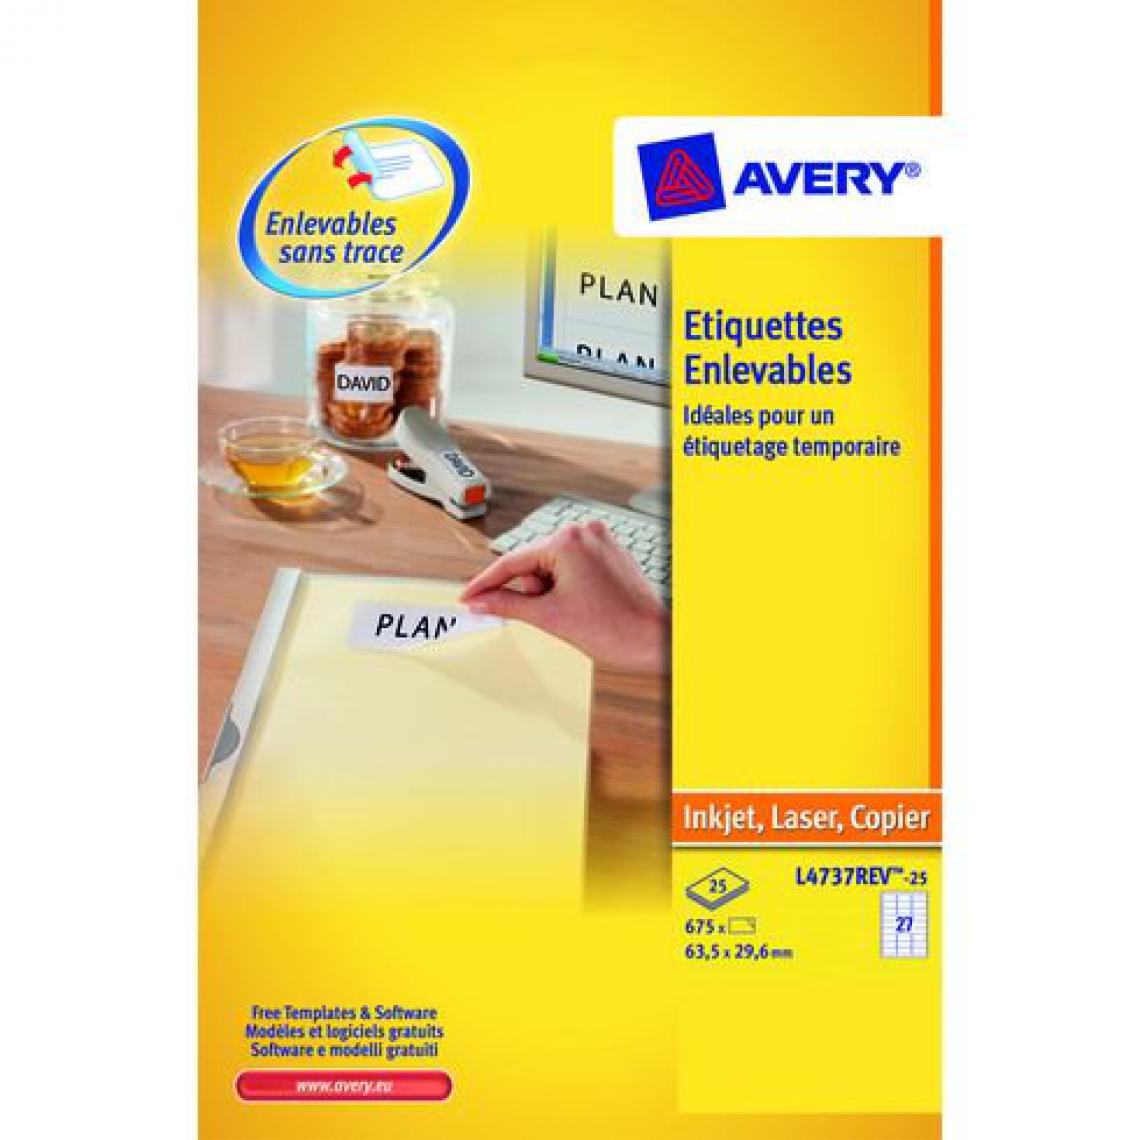 Avery - Etiquettes enlevables 63,5 x 29,6 mm Avery L4737-25 - Pochette de 675 - Accessoires Bureau